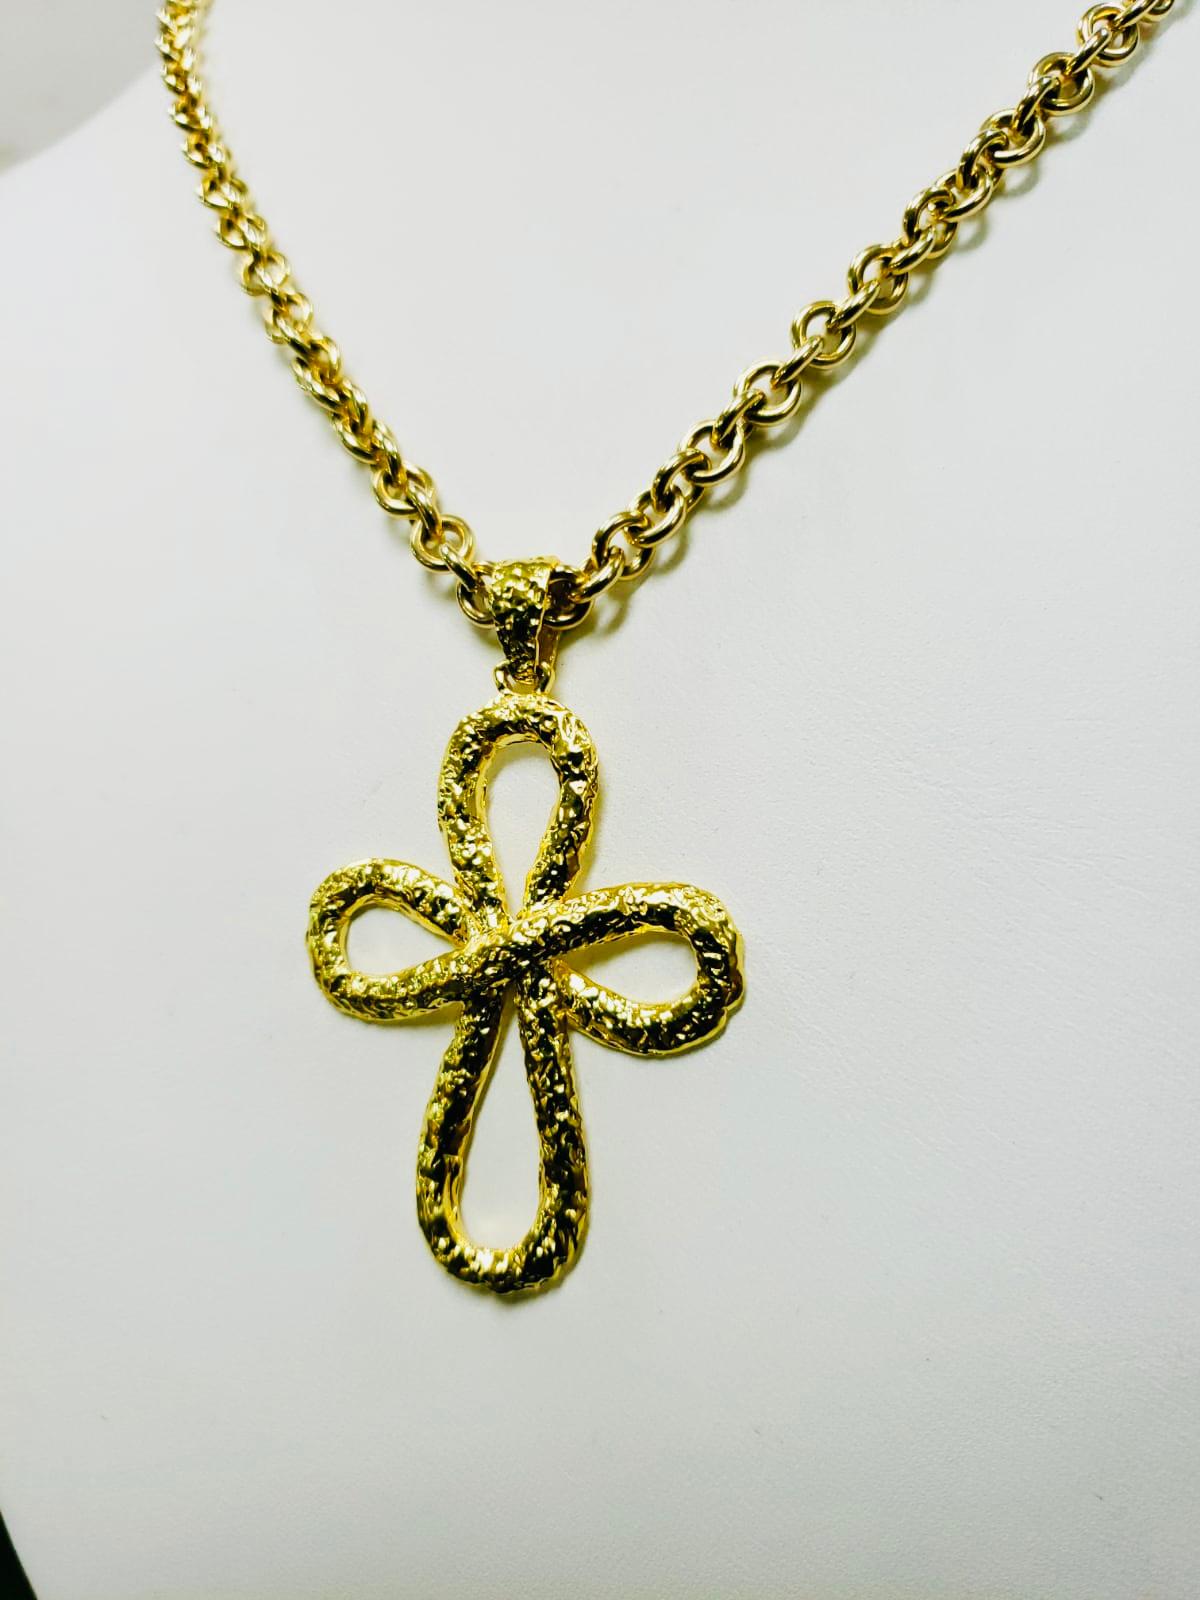 22kt gold cross pendant